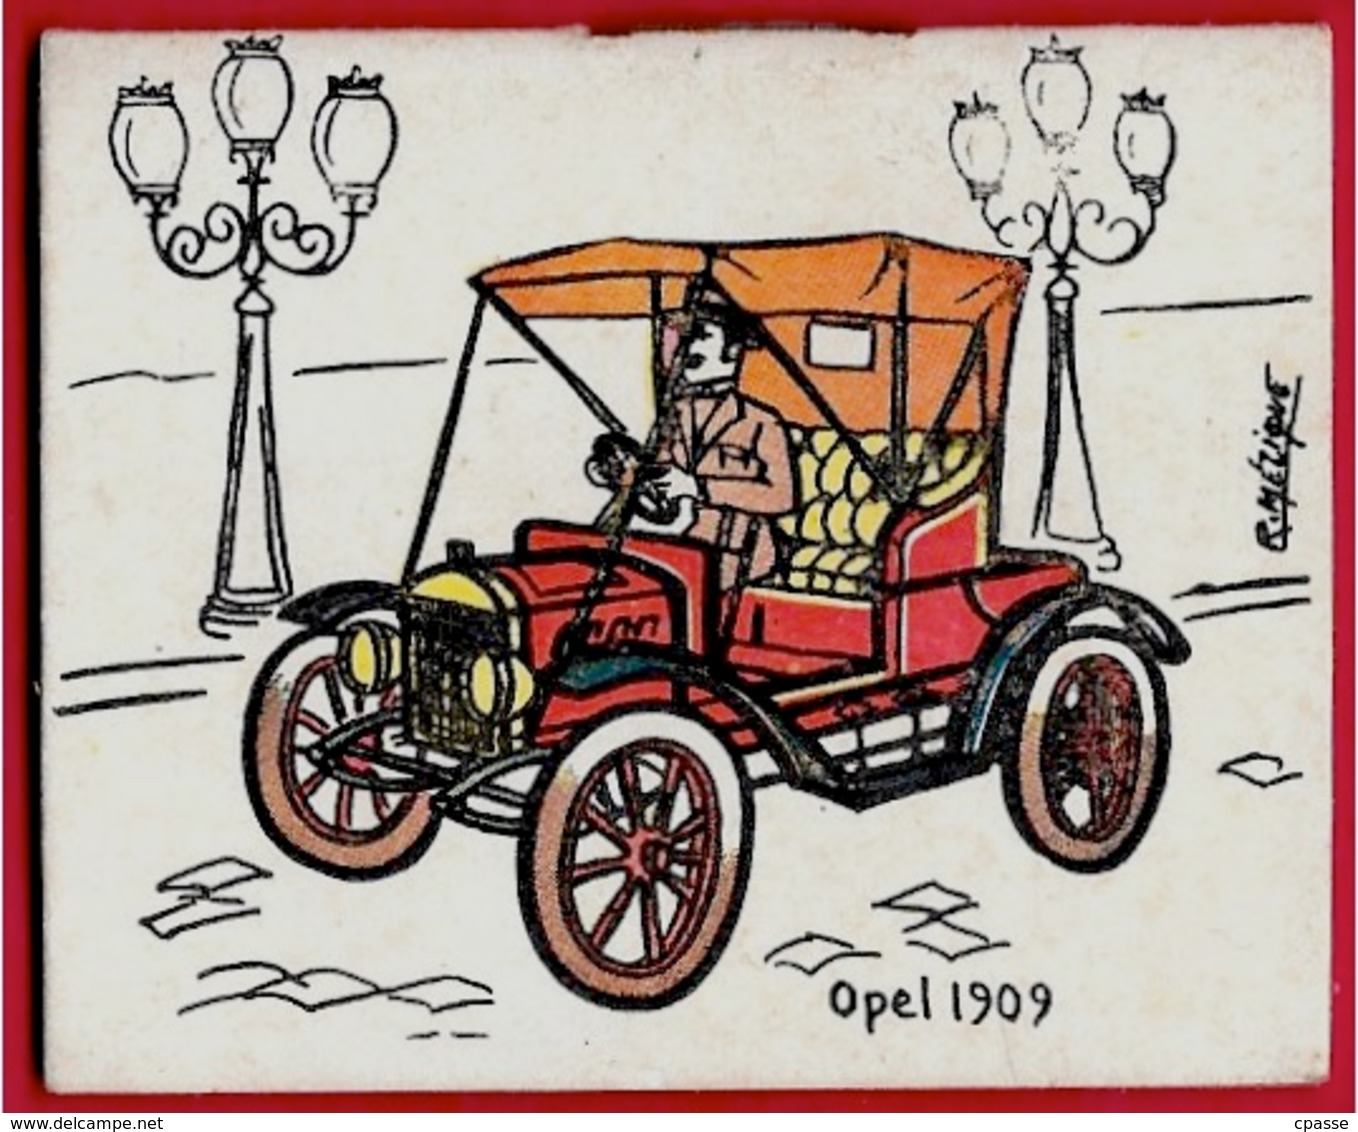 AGENDA Calendrier Petit Format 1965 "OPEL 1909" - Chemiserie Bonneterie Rue Thiers 78 MANTES-La-JOLIE - Petit Format : 1961-70